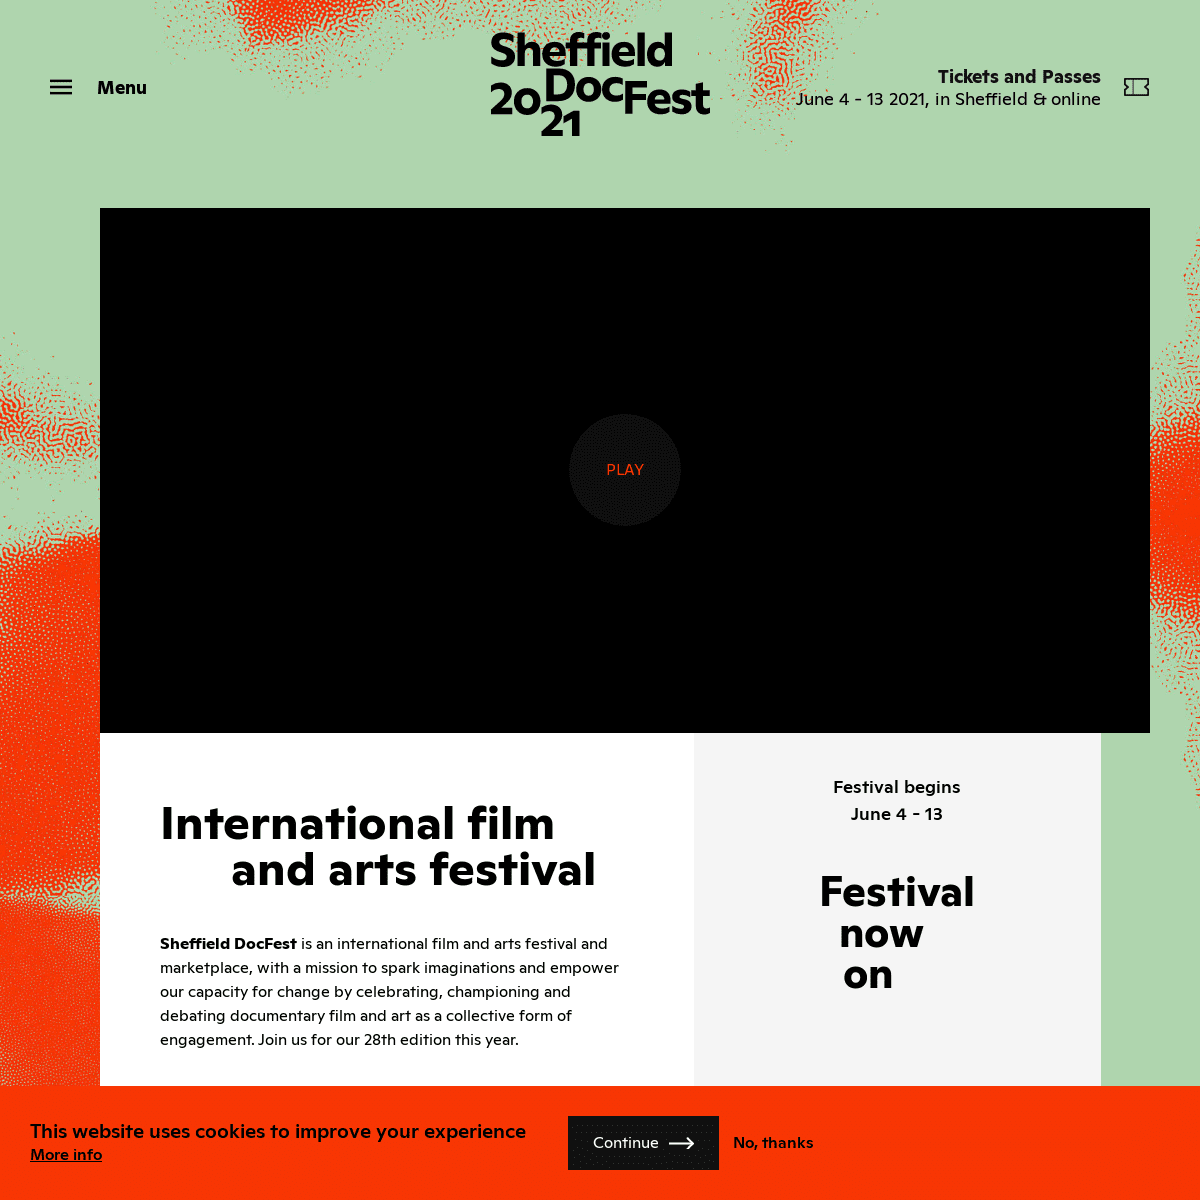 A complete backup of https://sheffdocfest.com